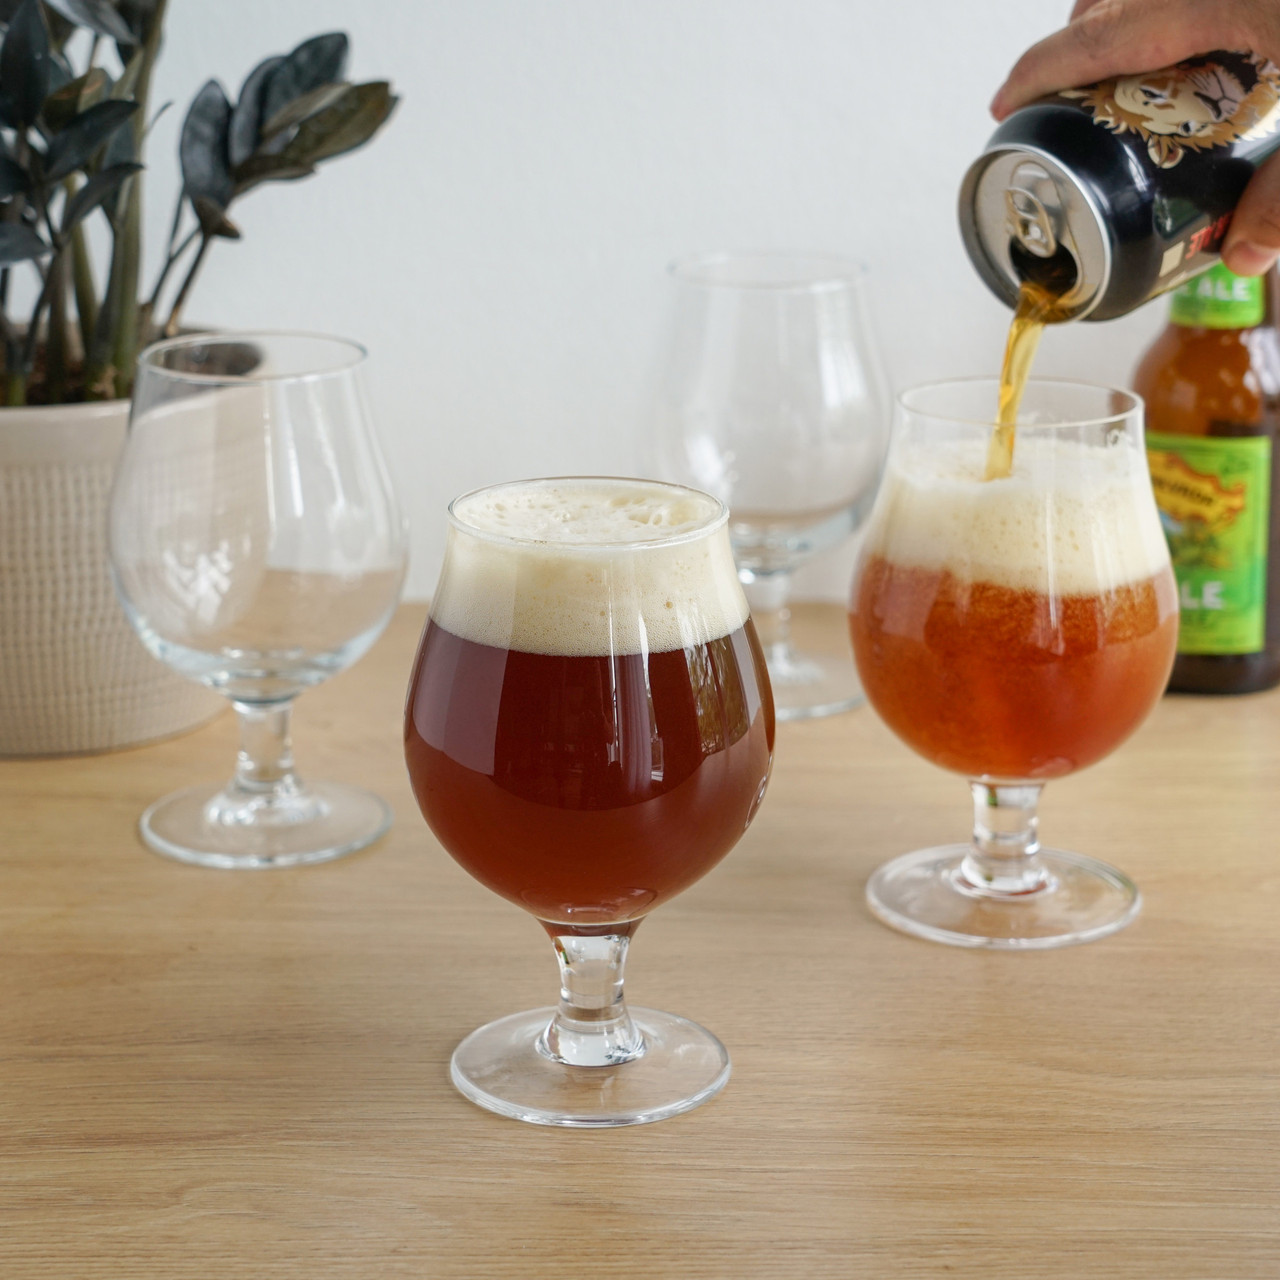 Beer Tulip Glasses, Set of 4 by True